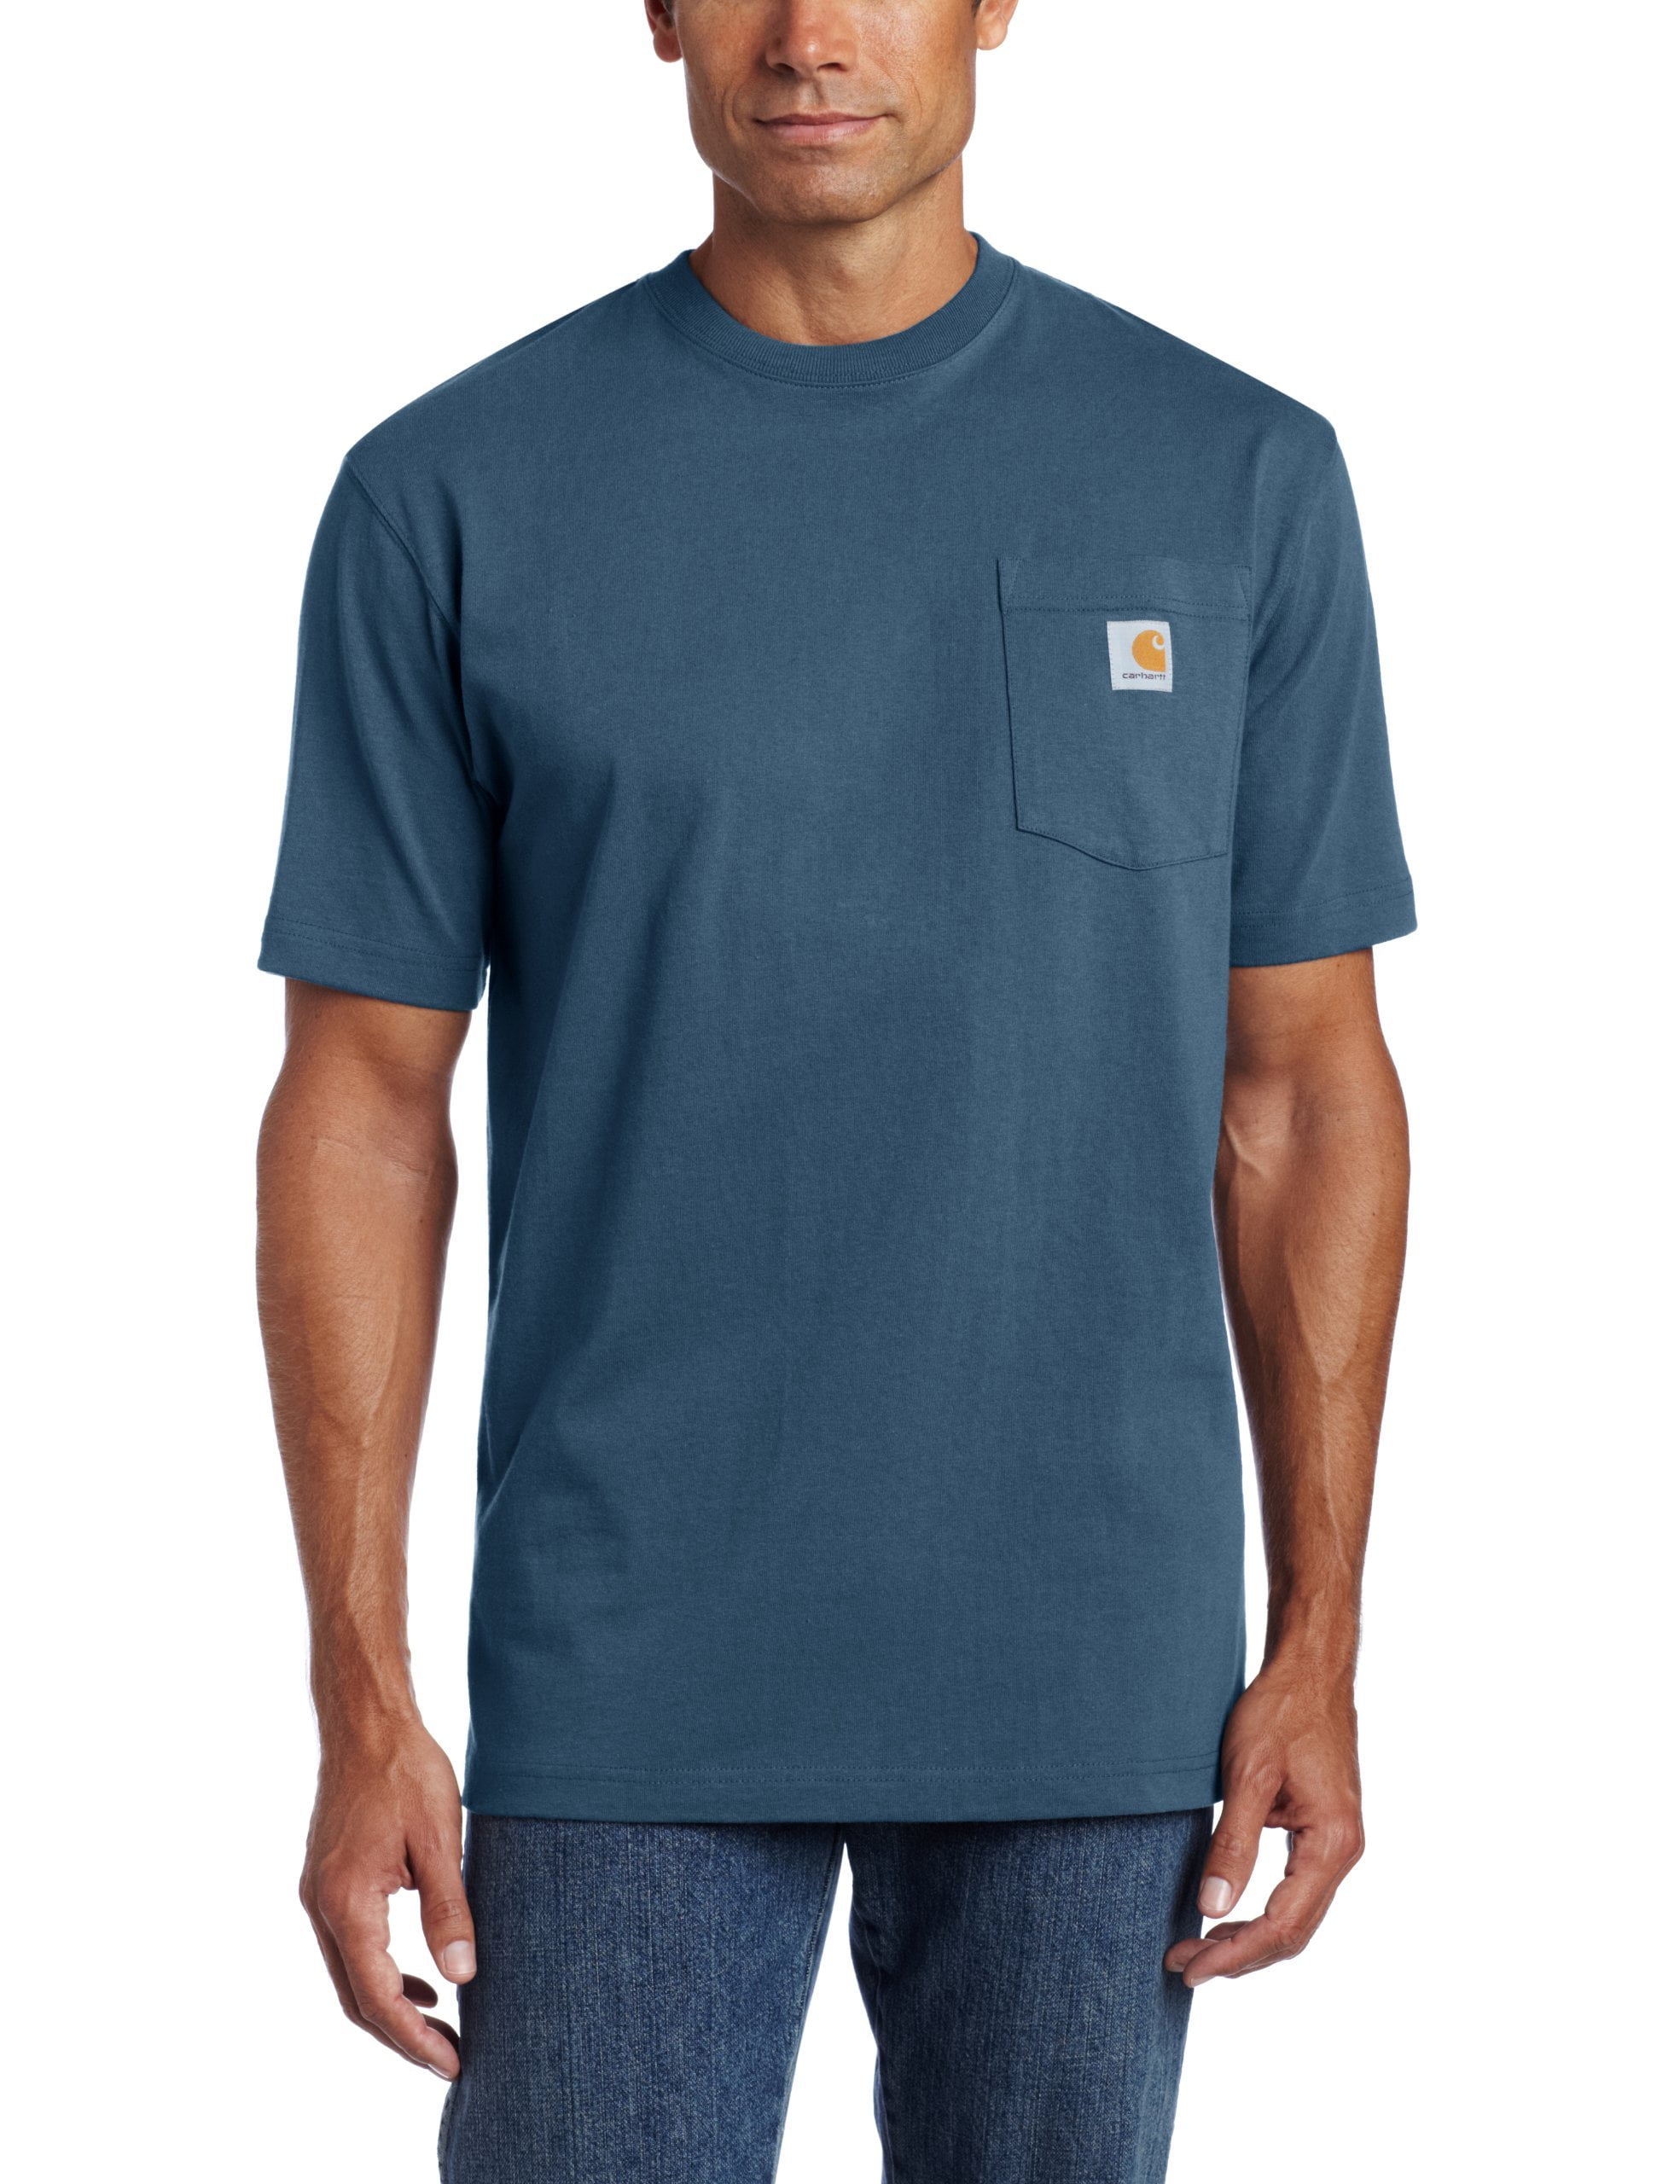 Carhartt - Carhartt Workwear Pocket Short Sleeve T-Shirt - Walmart.com ...